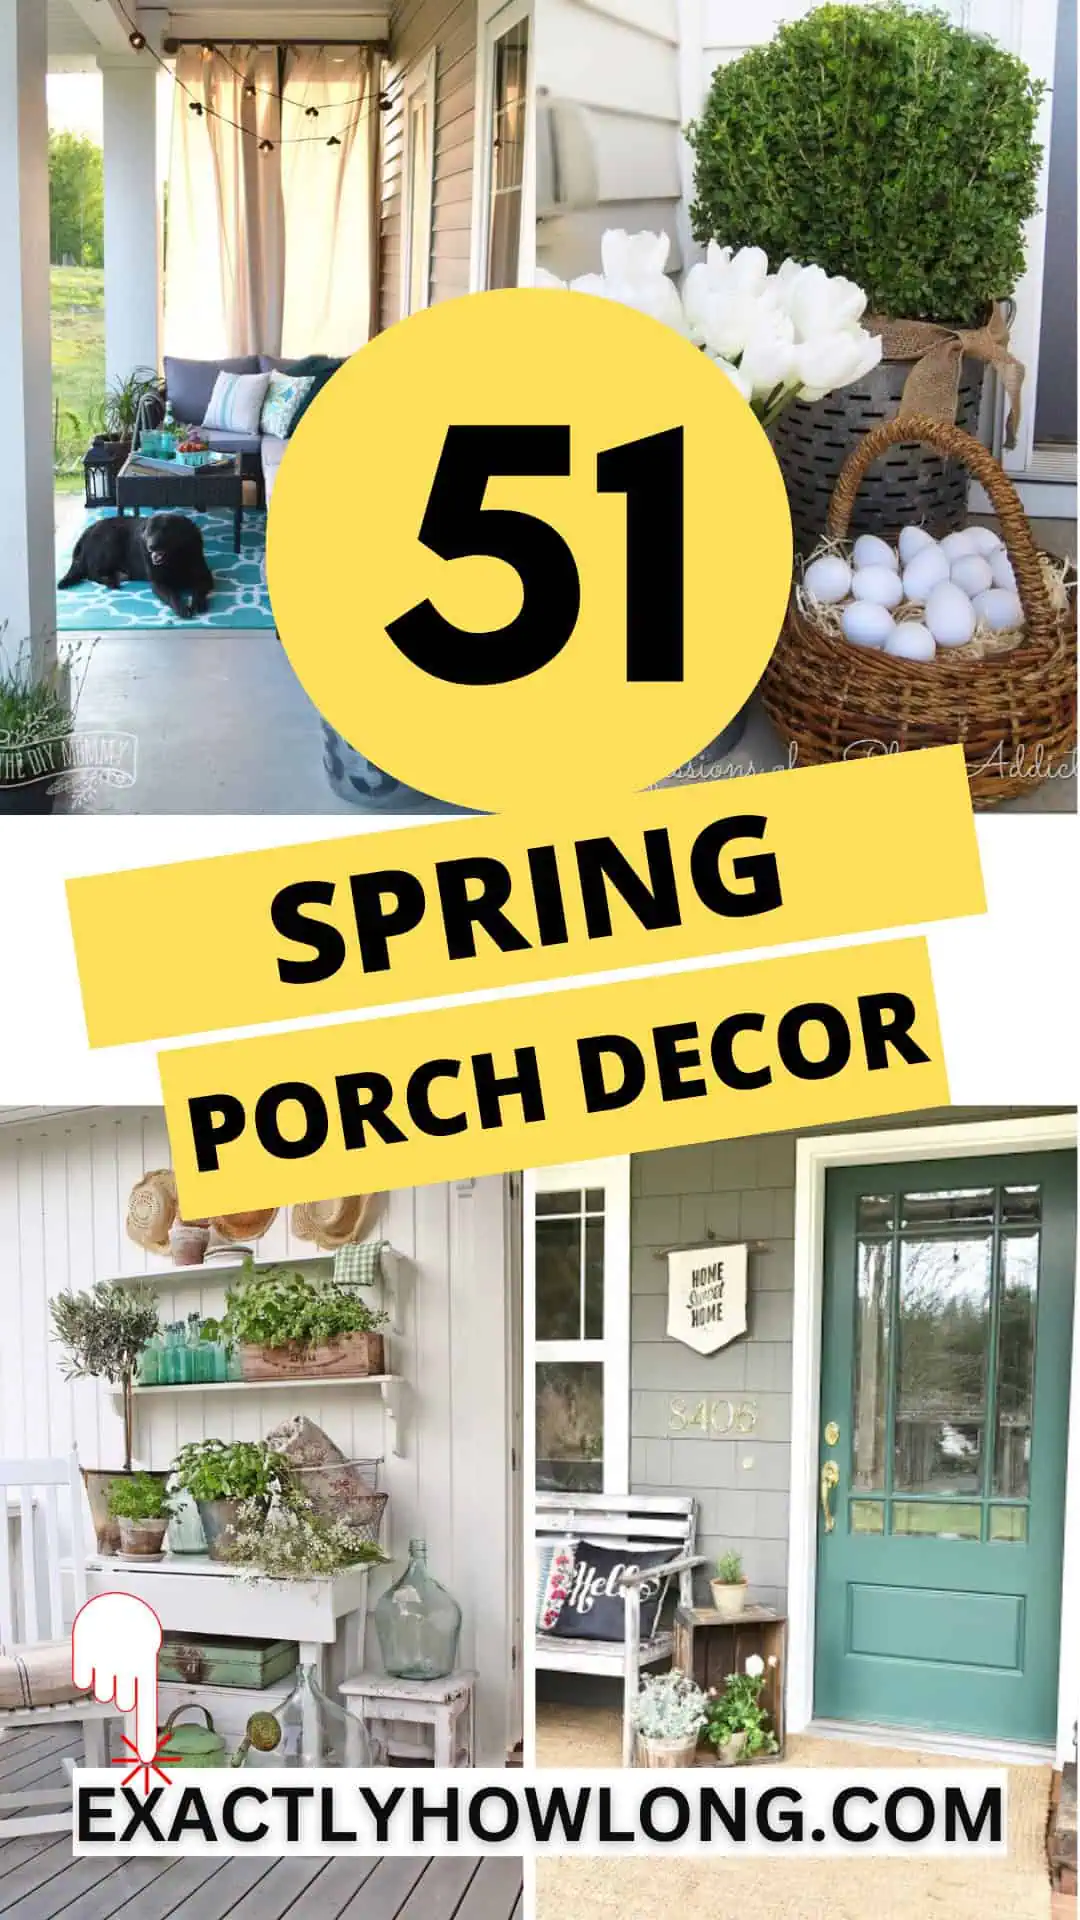 Spring Porch Decor Ideas